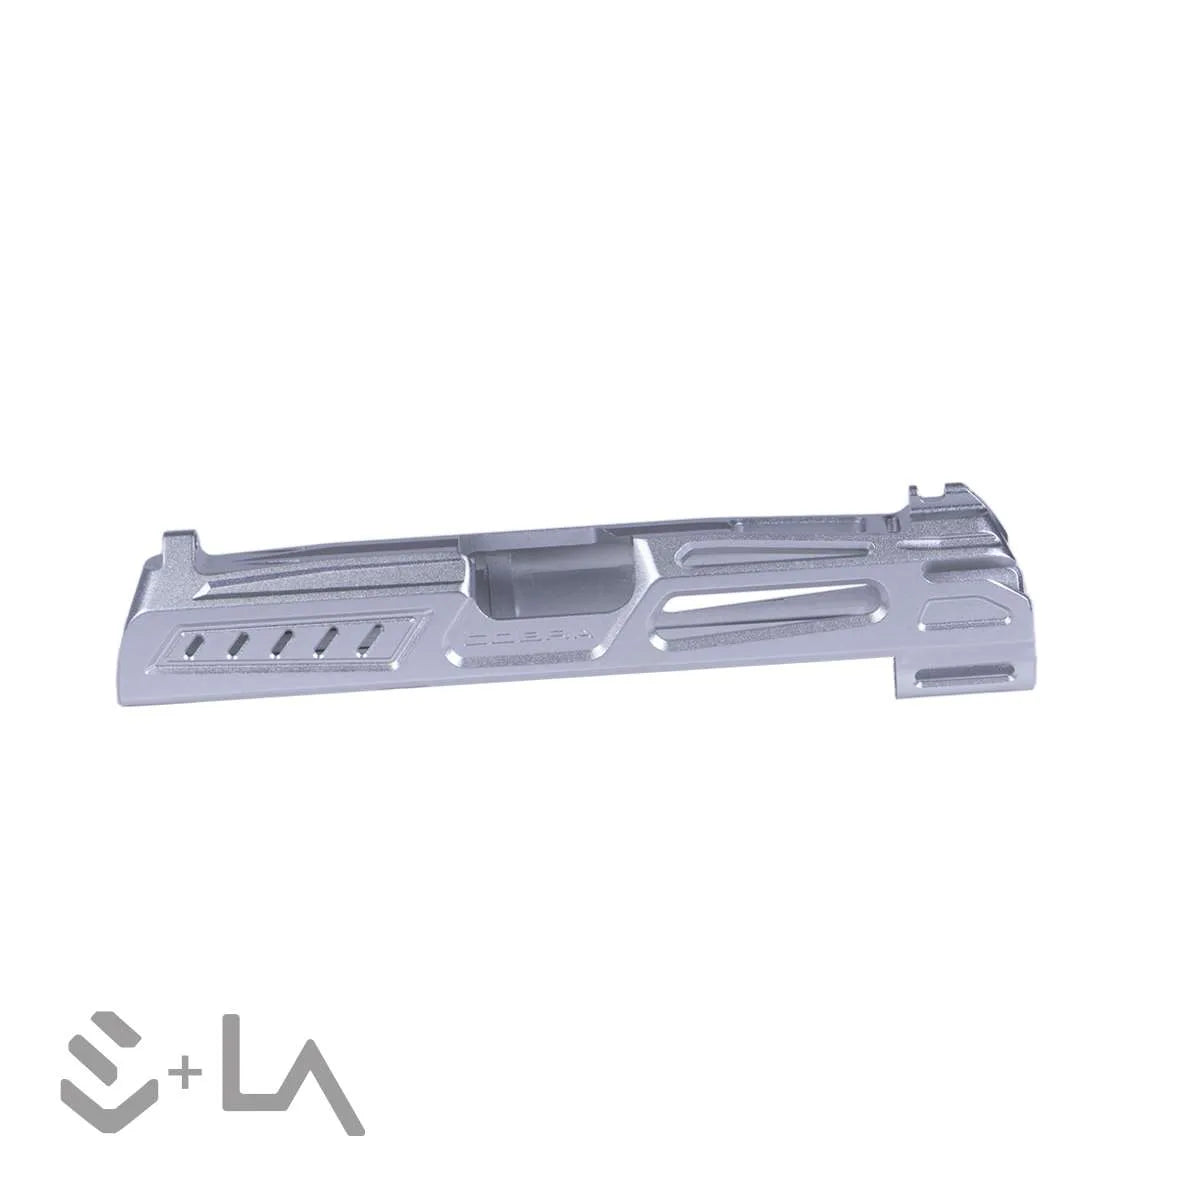 LA Capa Customs x SpeedQB 4.3 “COBRA” Aluminum Slide - Silver